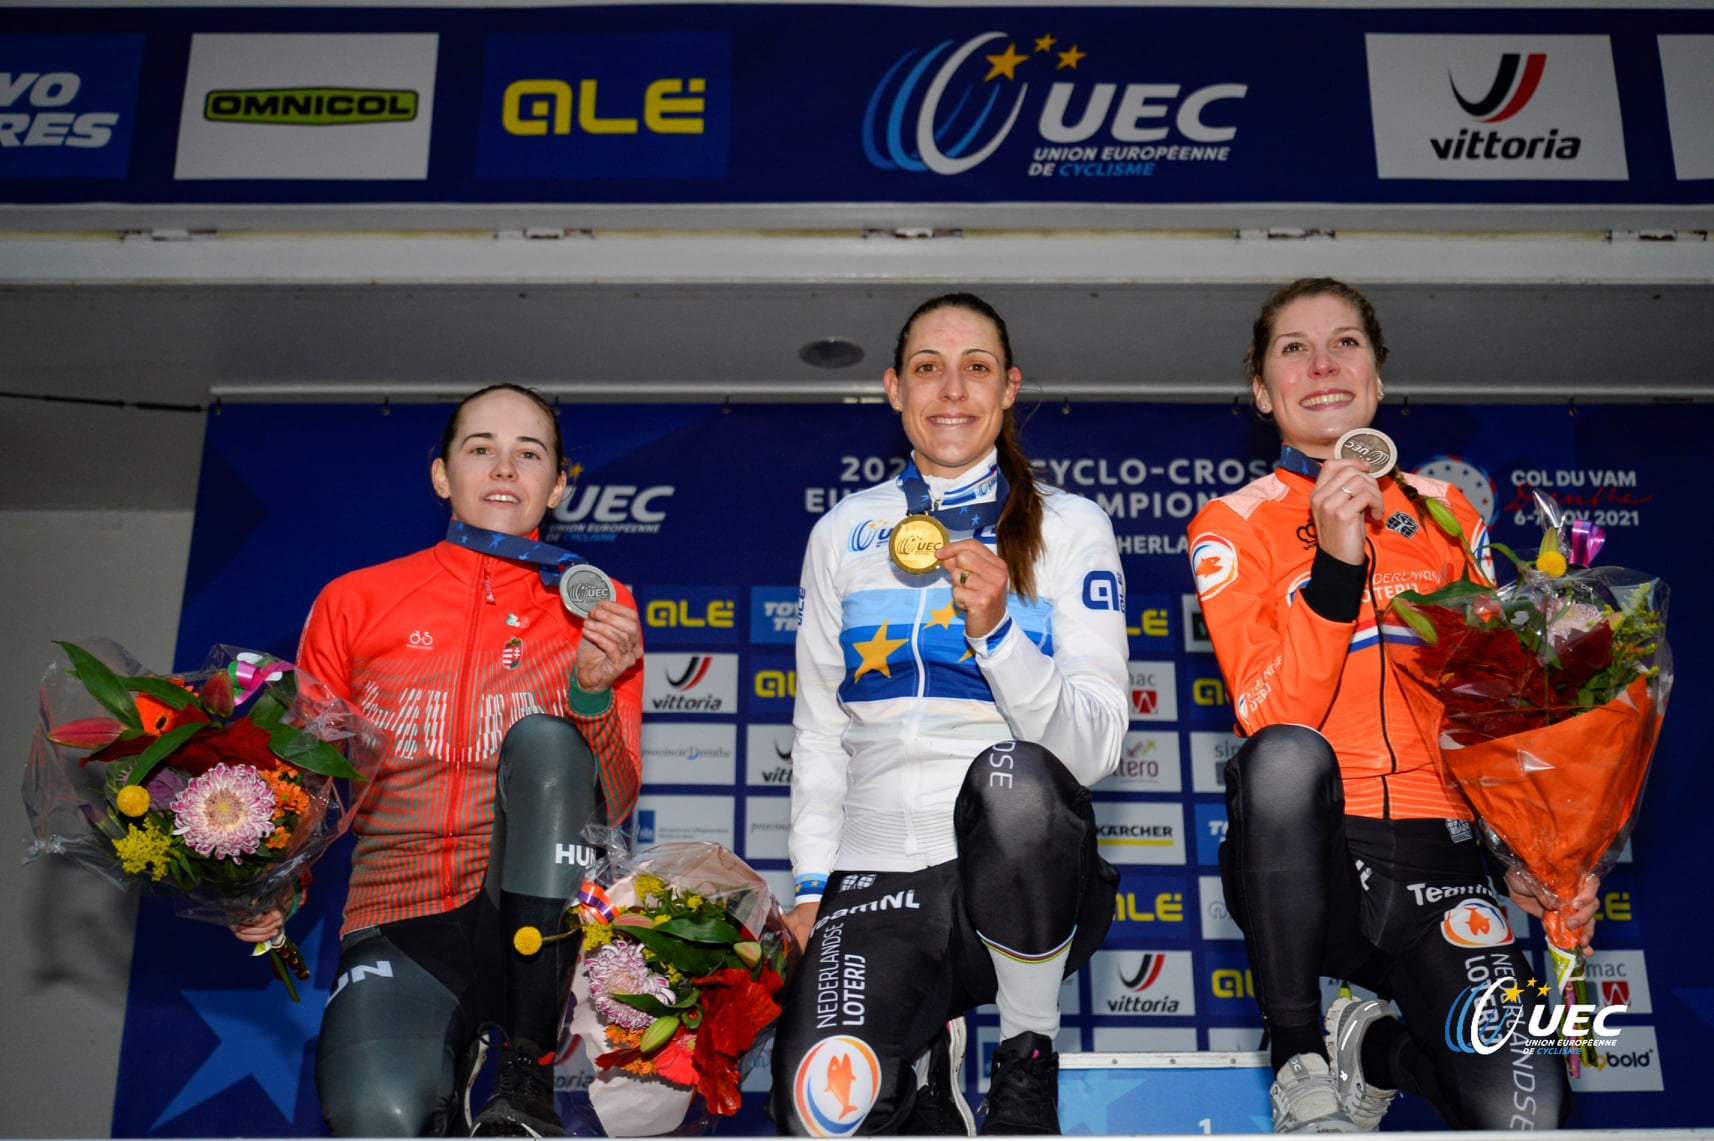 Il podio del Campionato Europeo ciclocross Donne Elite 2021 a Col du Vam (foto UEC/BettiniPhoto)